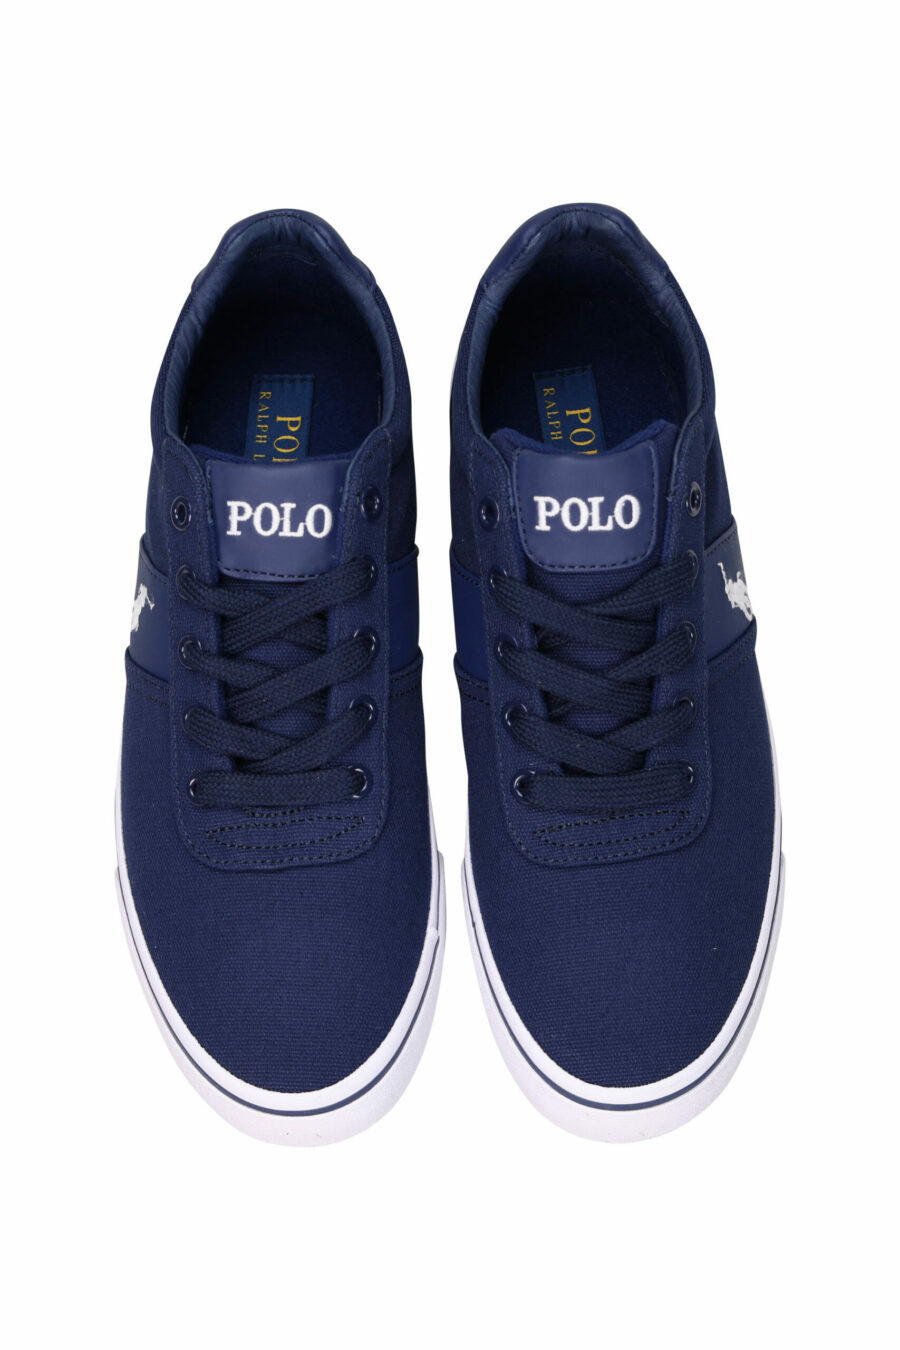 Baskets bleu foncé avec mini-logo "polo" et semelle blanche - 3611588439341 4 échelles